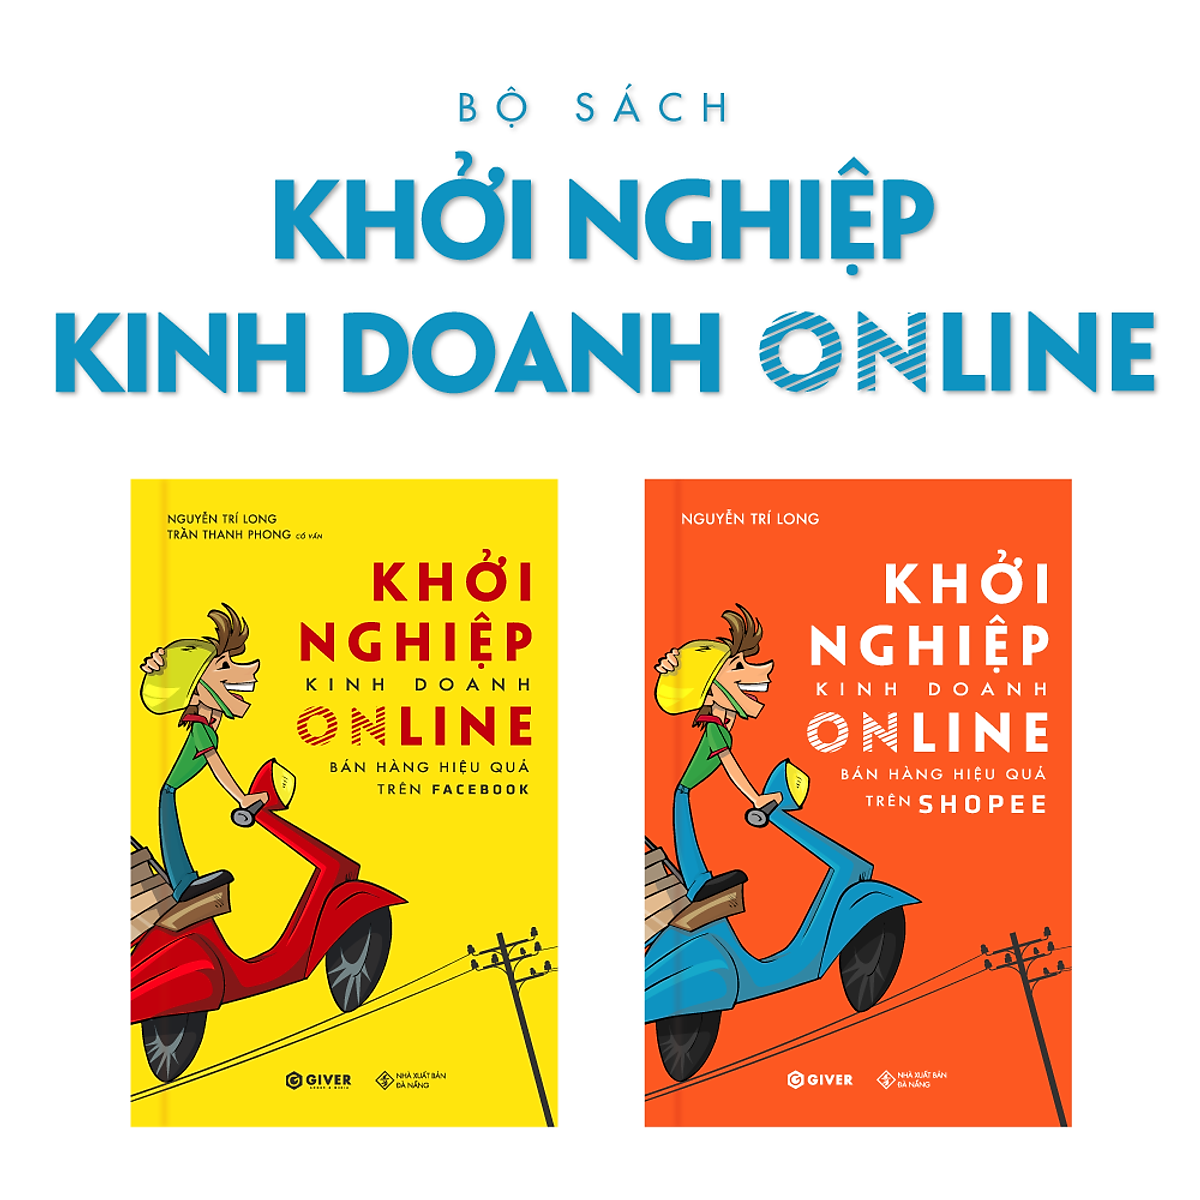 Bộ Sách Khởi Nghiệp Kinh Doanh Online - Marketing và Bán Hàng Hiệu Quả Với Thương Mại Điện Tử Tại Việt Nam